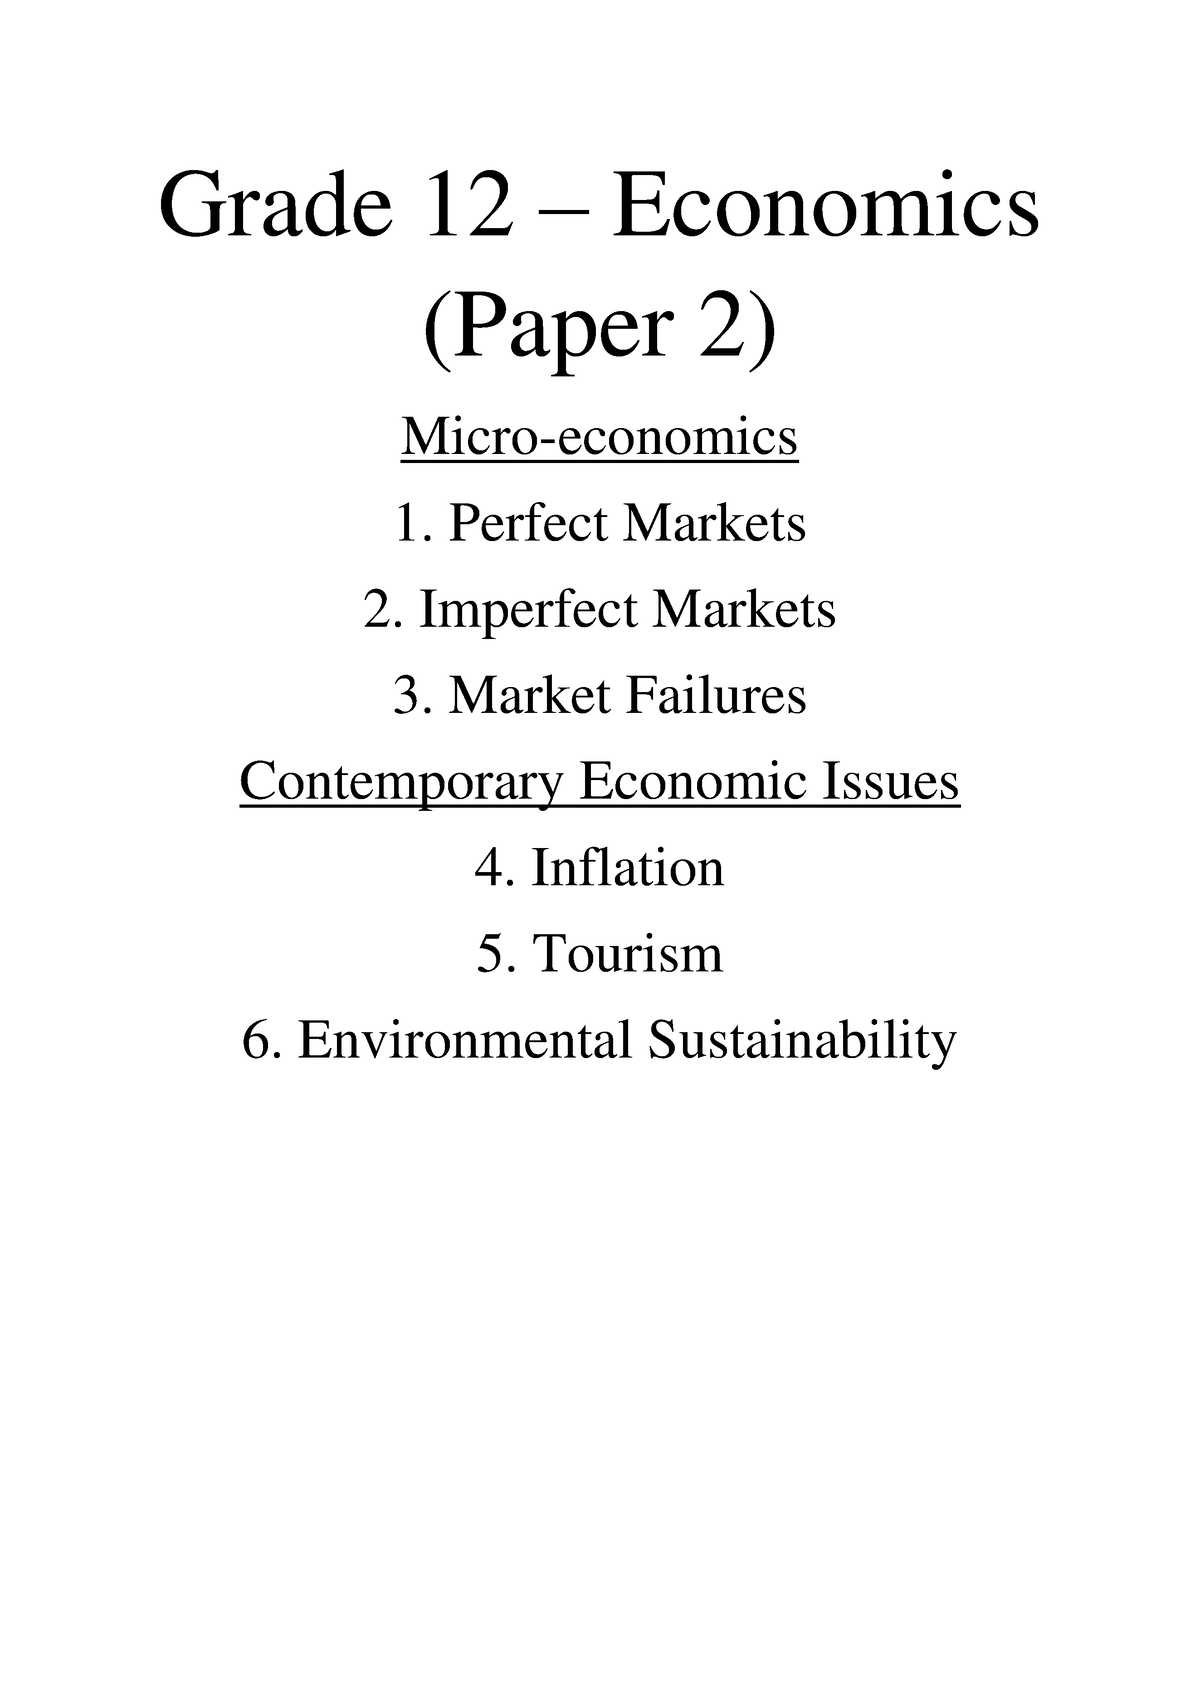 economics grade 12 essays pdf download paper 2